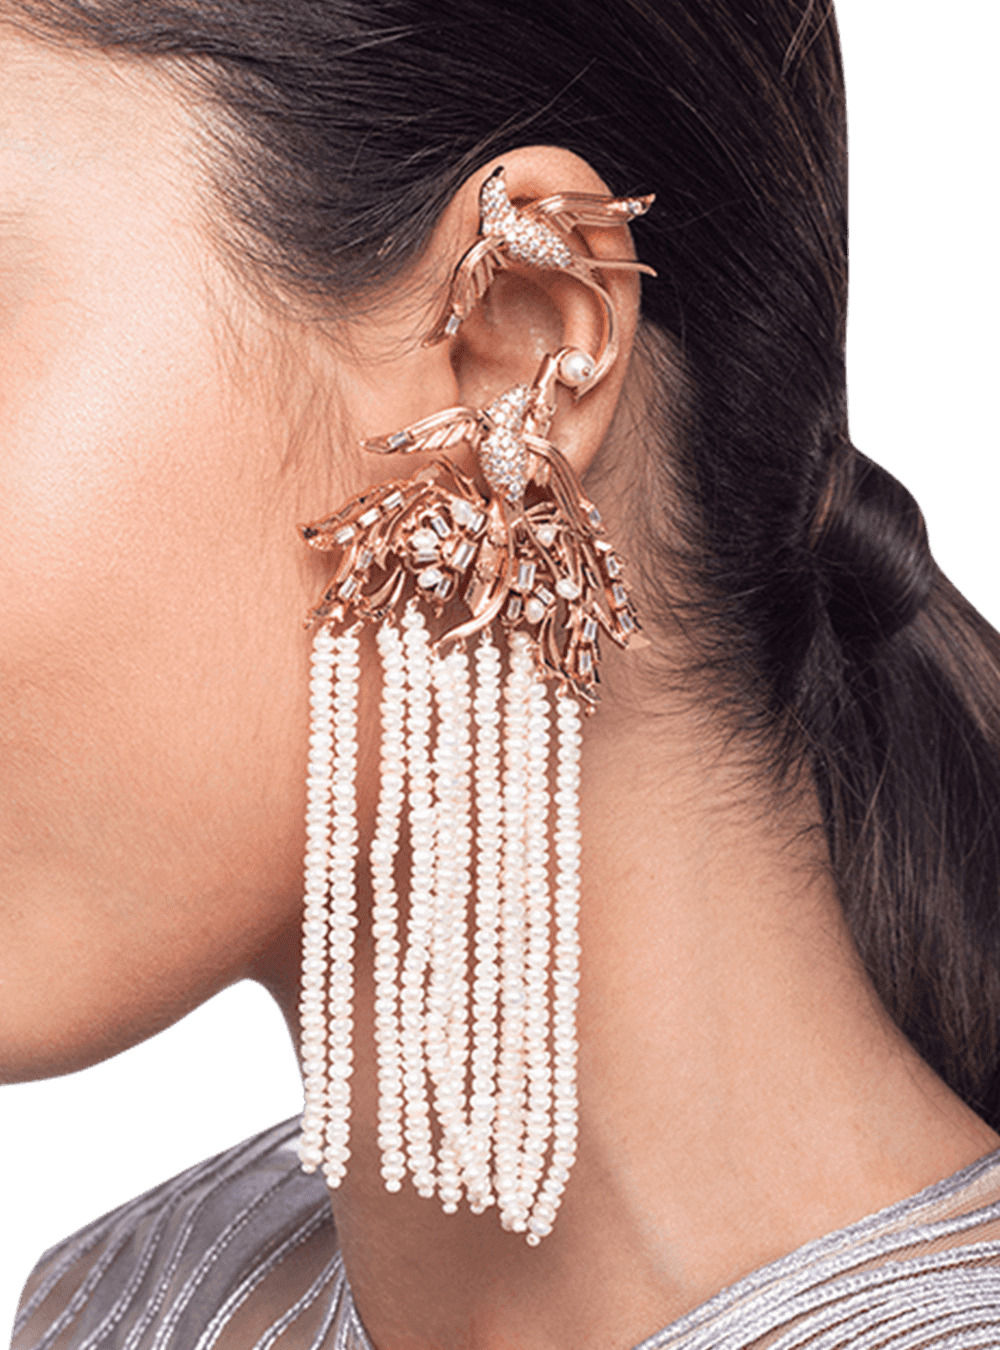 Chandelier Ear Cuff Earrings